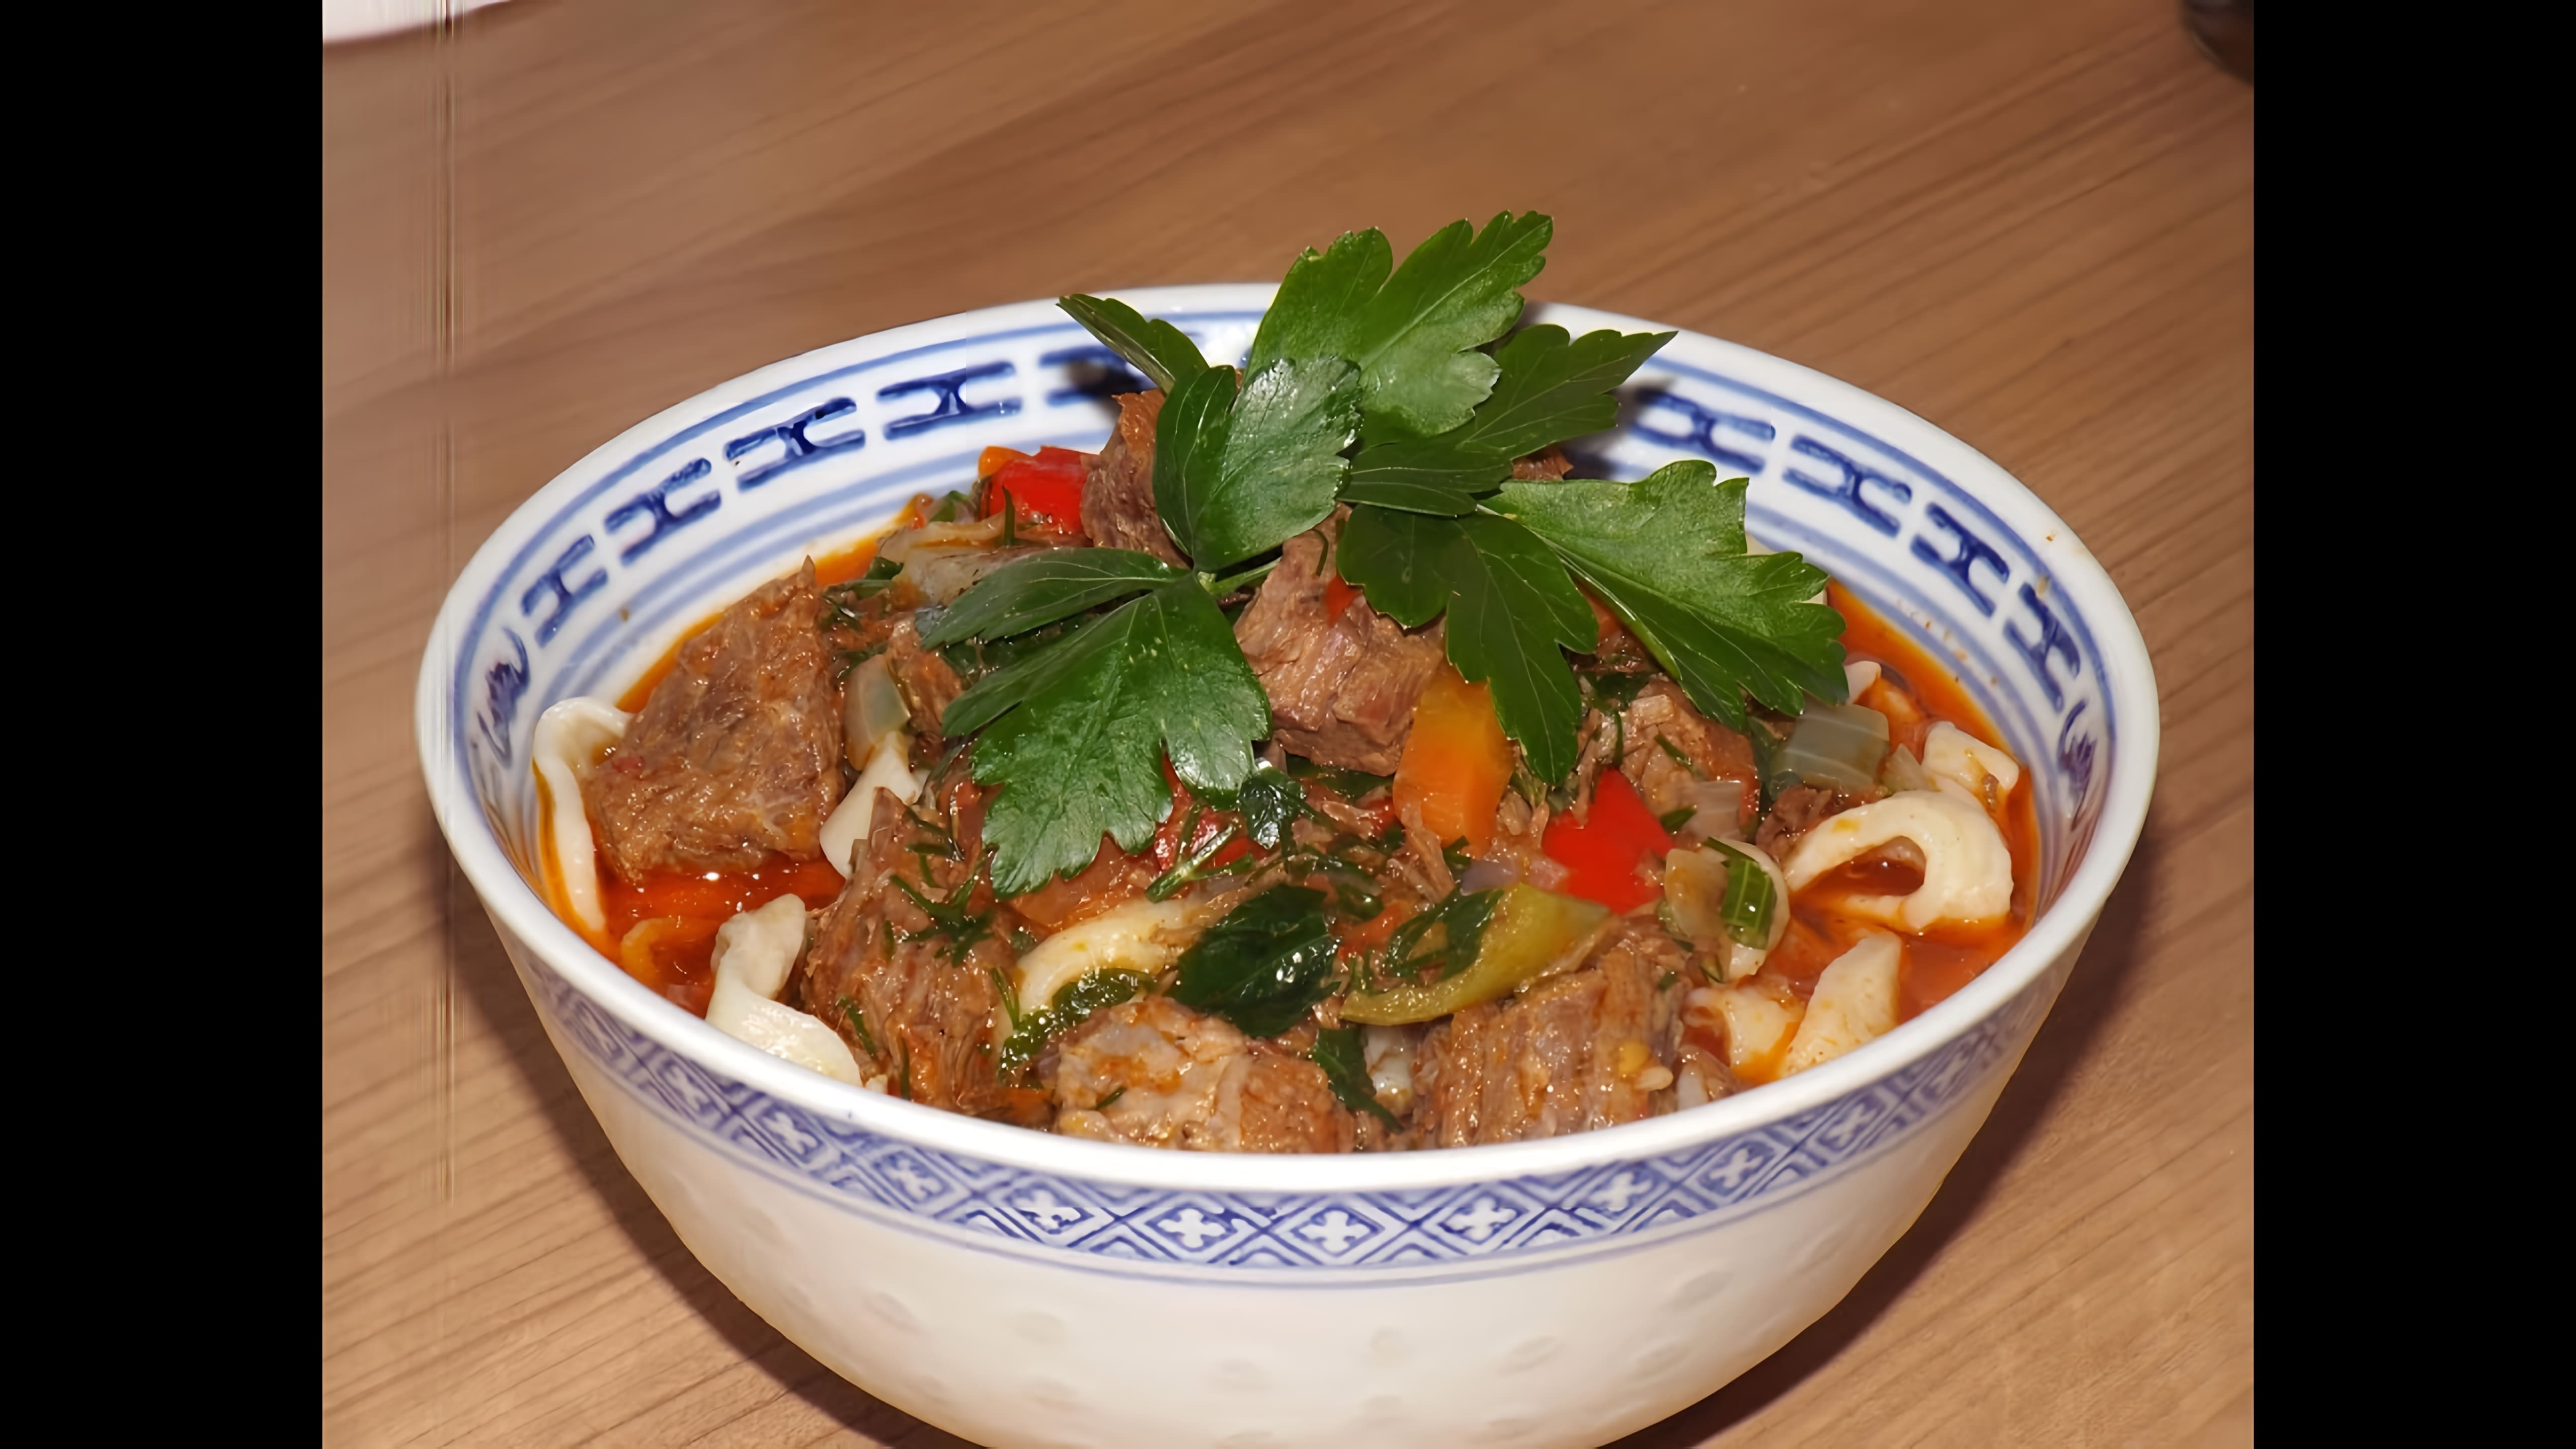 В этом видео демонстрируется рецепт приготовления лагмана, традиционного блюда узбекской кухни